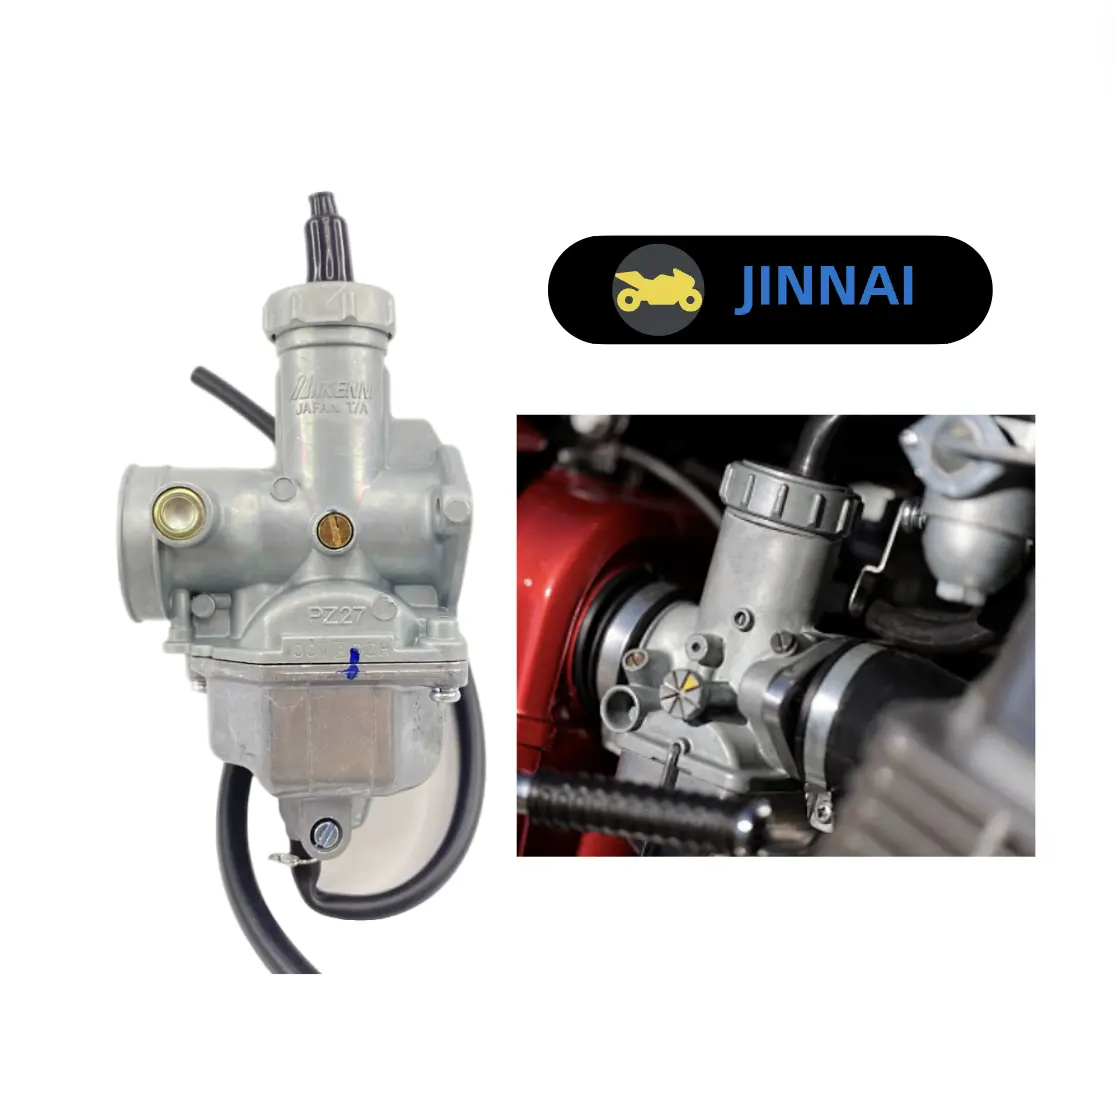 JINNAI मोटरसाइकिल इंजन कार्बोरेटर PZ27 PD27 150cc मोटरसाइकिल कार्बोरेटर के लिए होंडा, carburetors